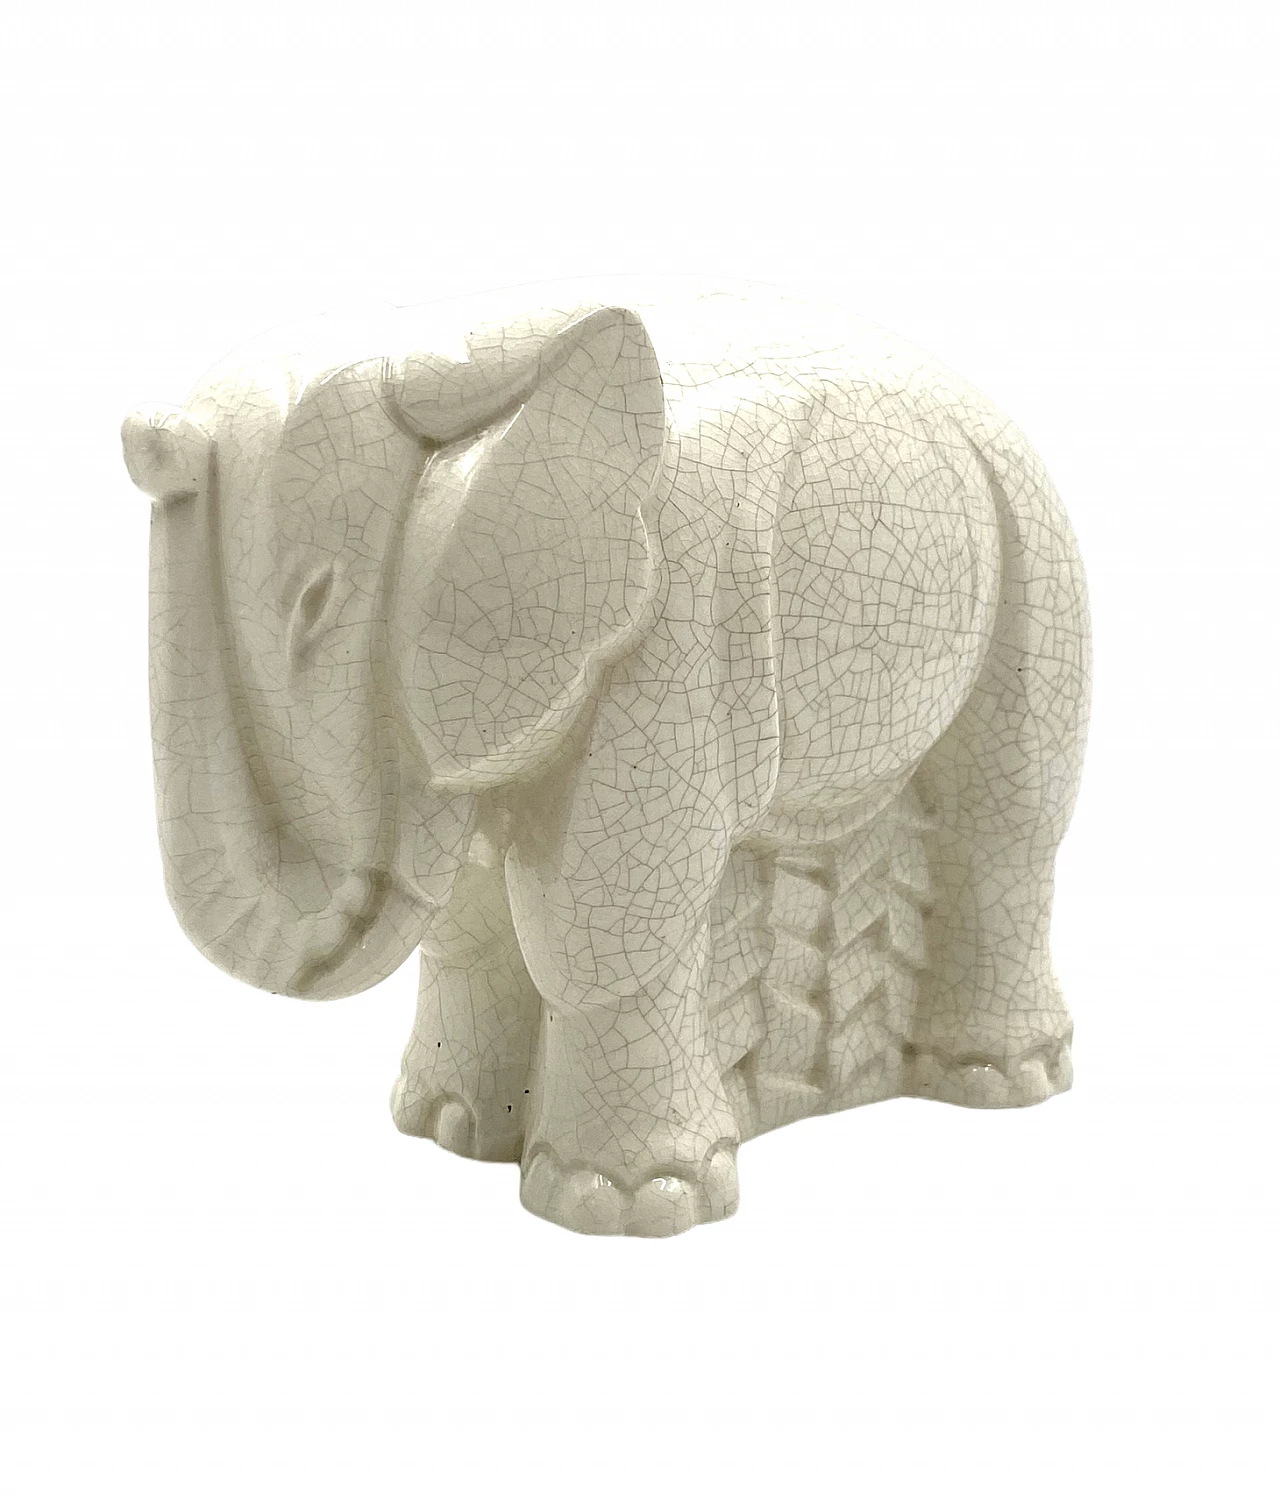 Elephant sculpture in craquelé porcelain by Charles Lemanceau, 1930s 16